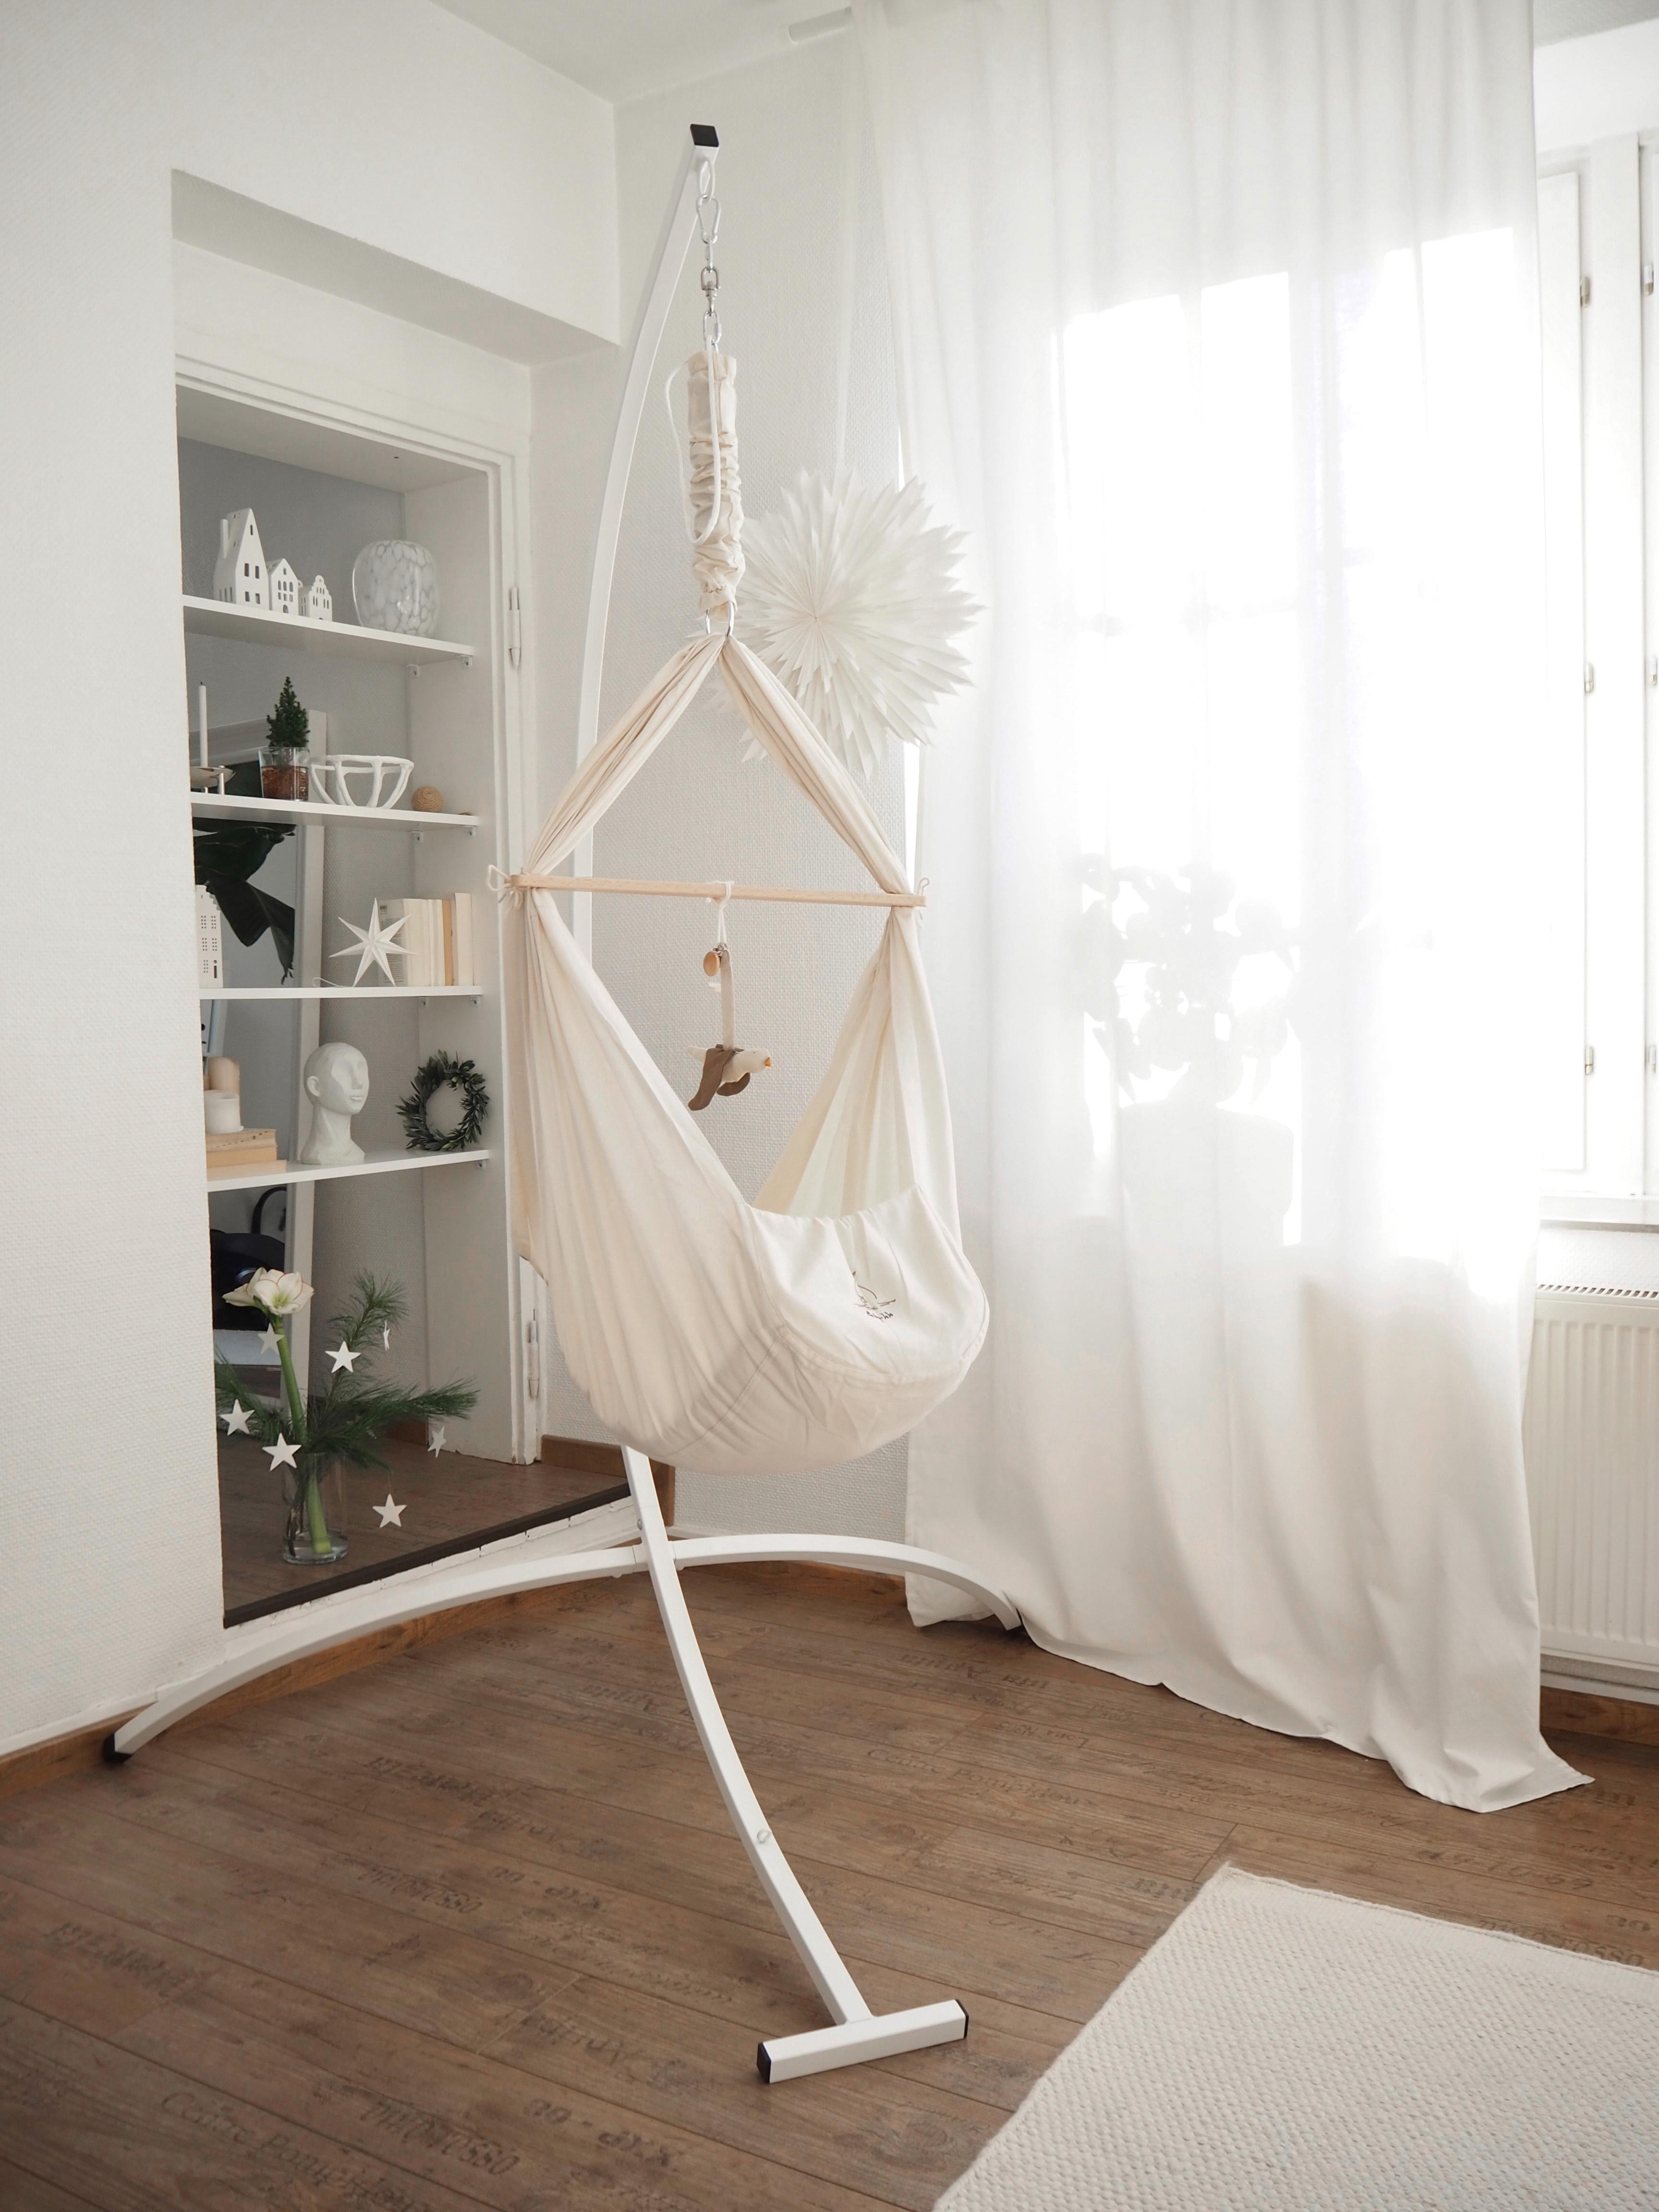 #feserwiege #schön #nützlich #interior #weiss #wohnzimmer #baby #deko #regaldeko